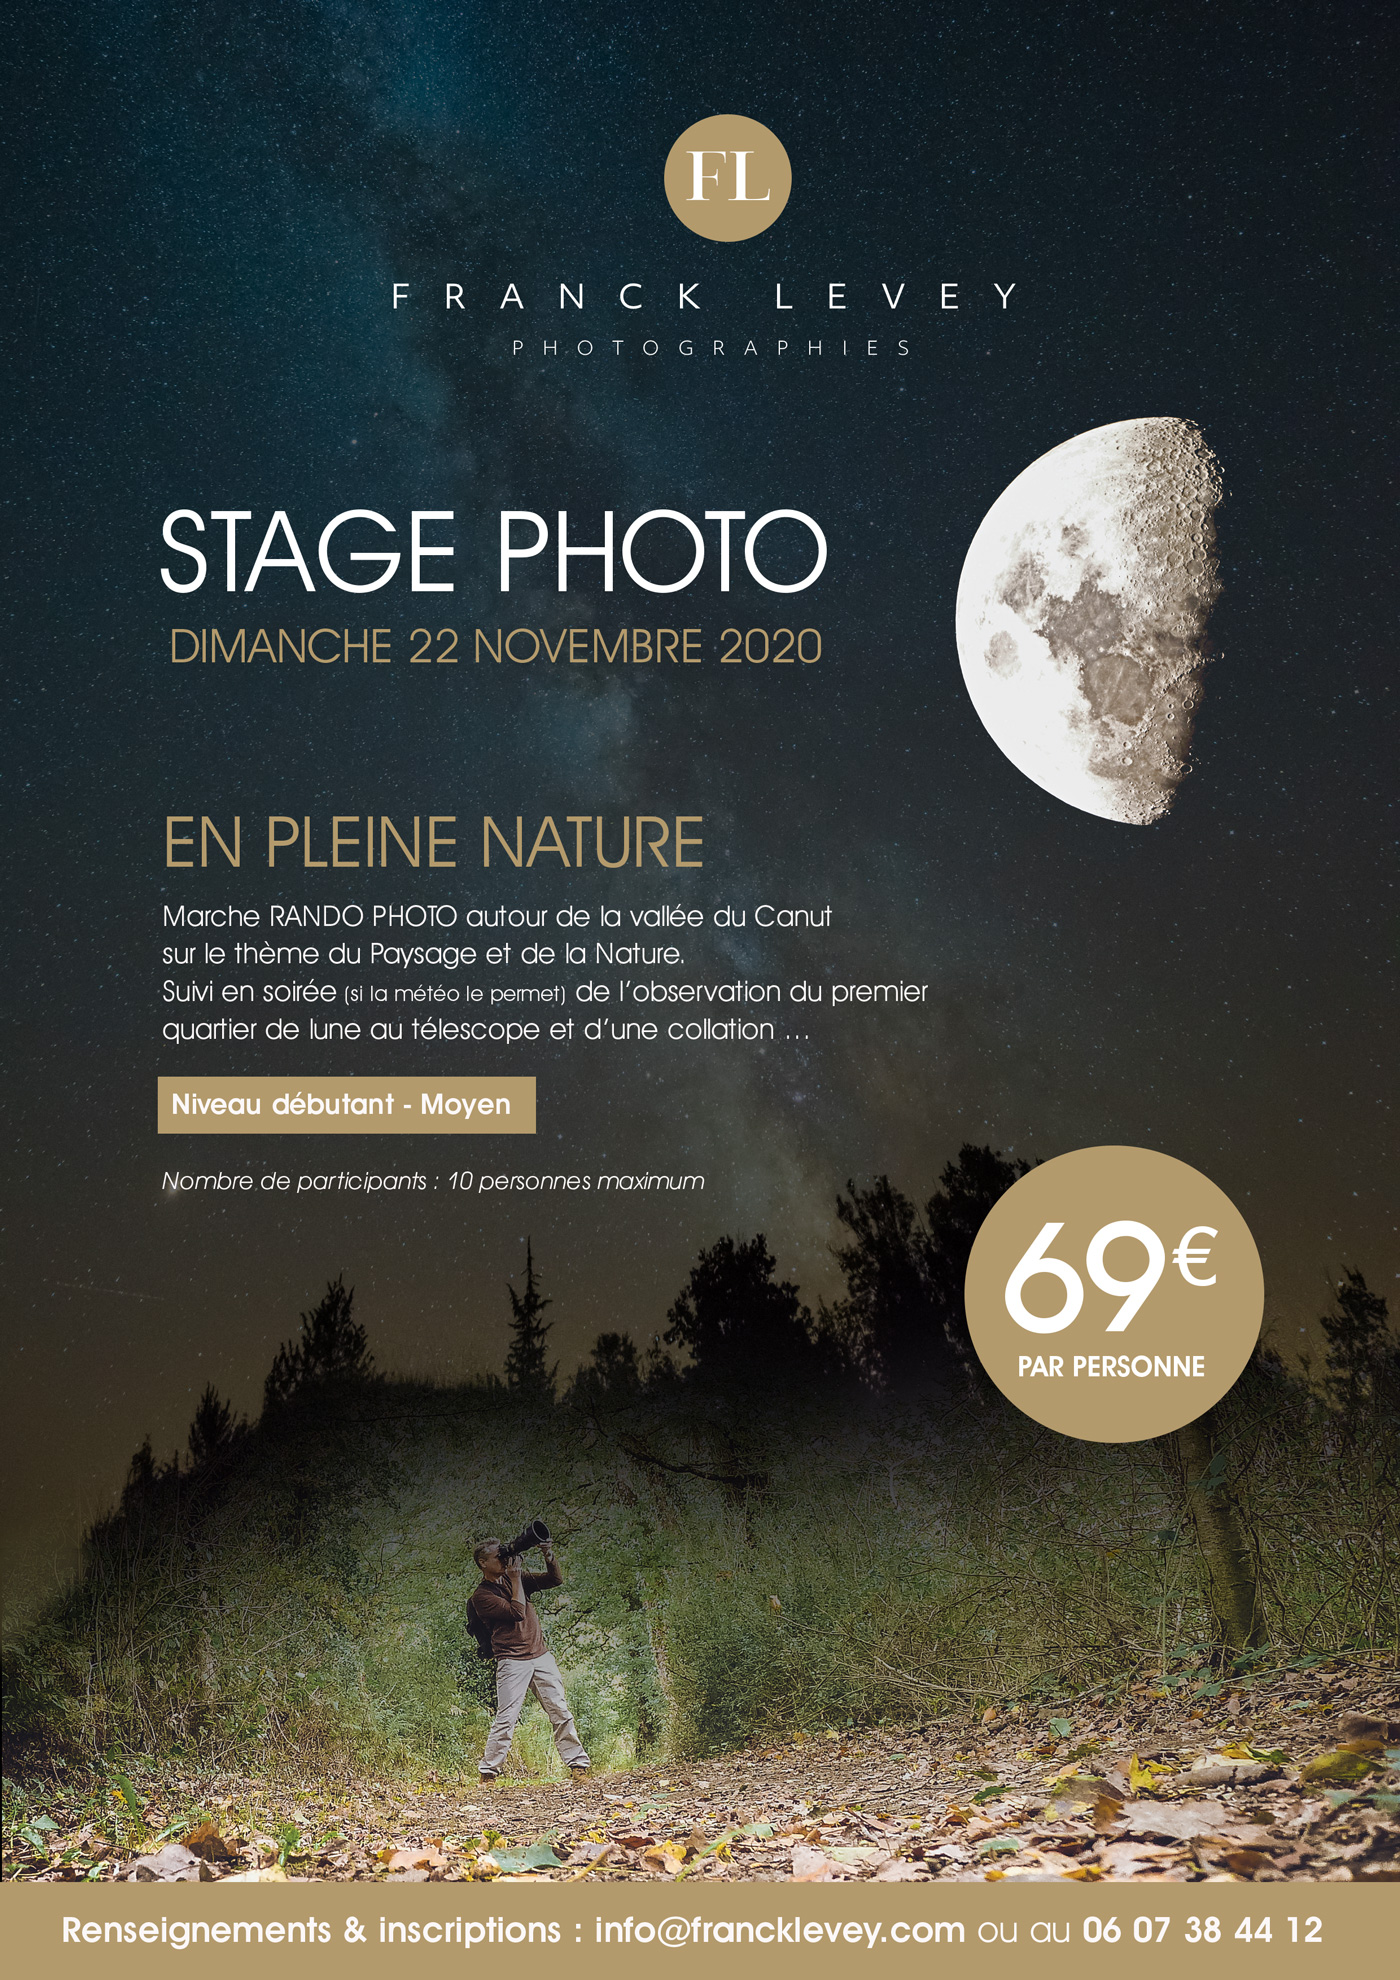 Stage Photo avec France Levey : en pleine nature